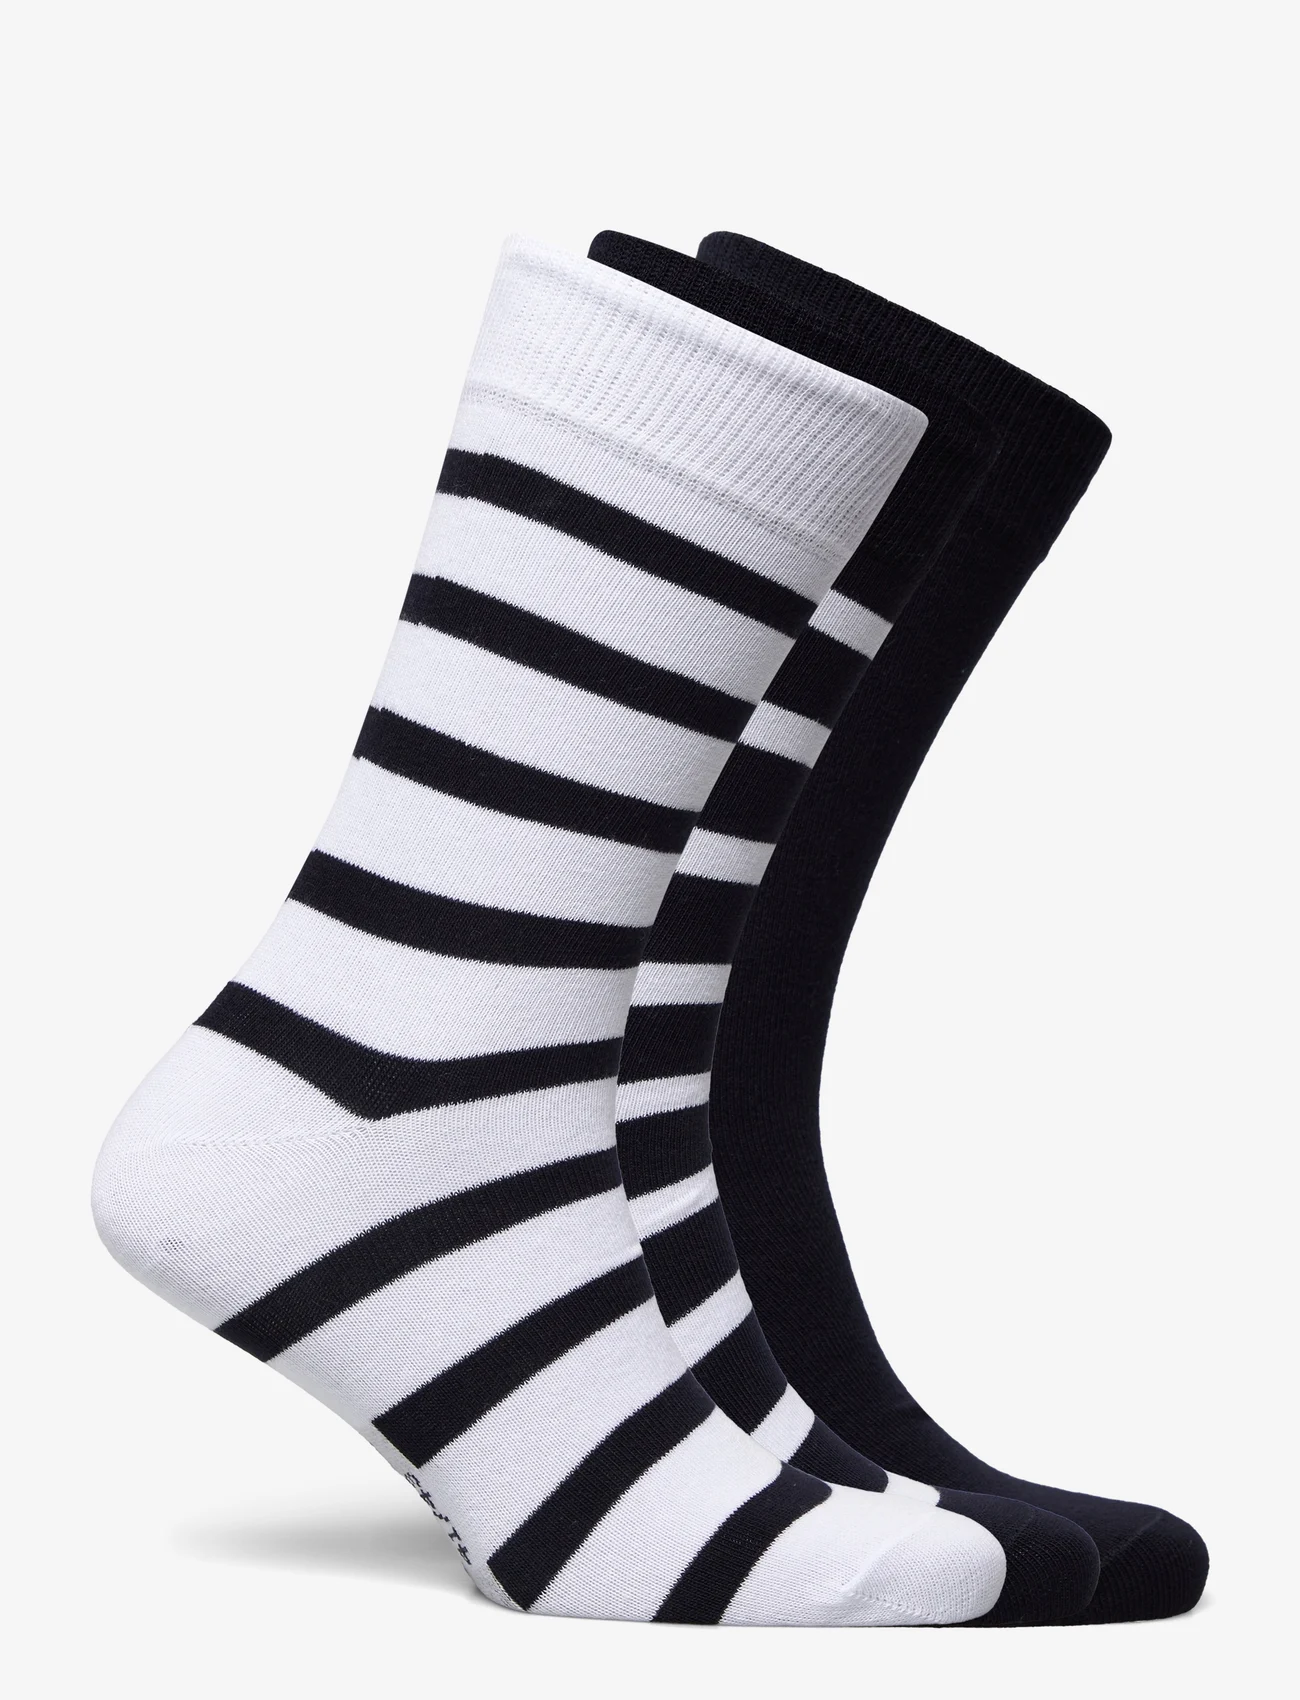 Armor Lux - Socks "Tri Loer" - najniższe ceny - navy/white - 1